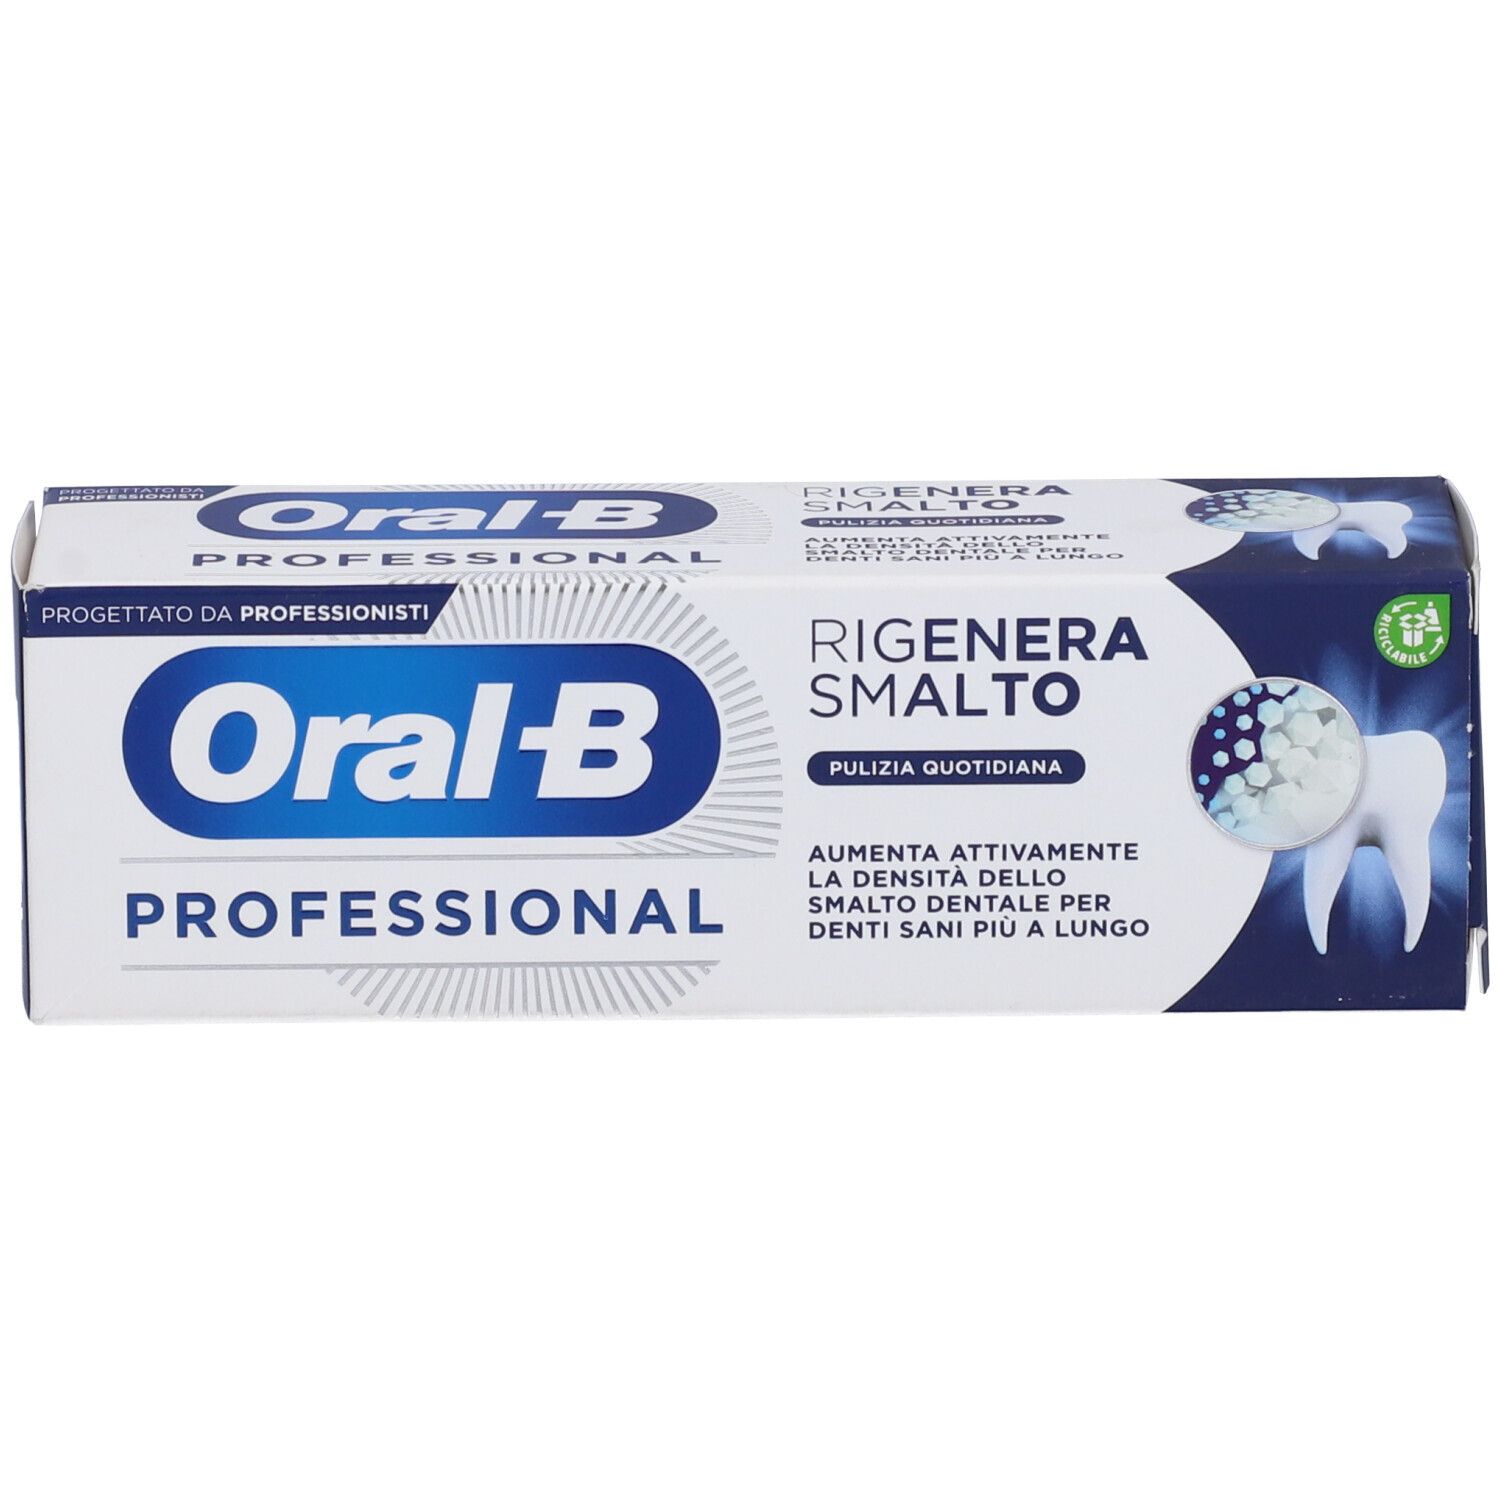 Oral-b Oral-B Professional Dentifricio Rigenera Smalt